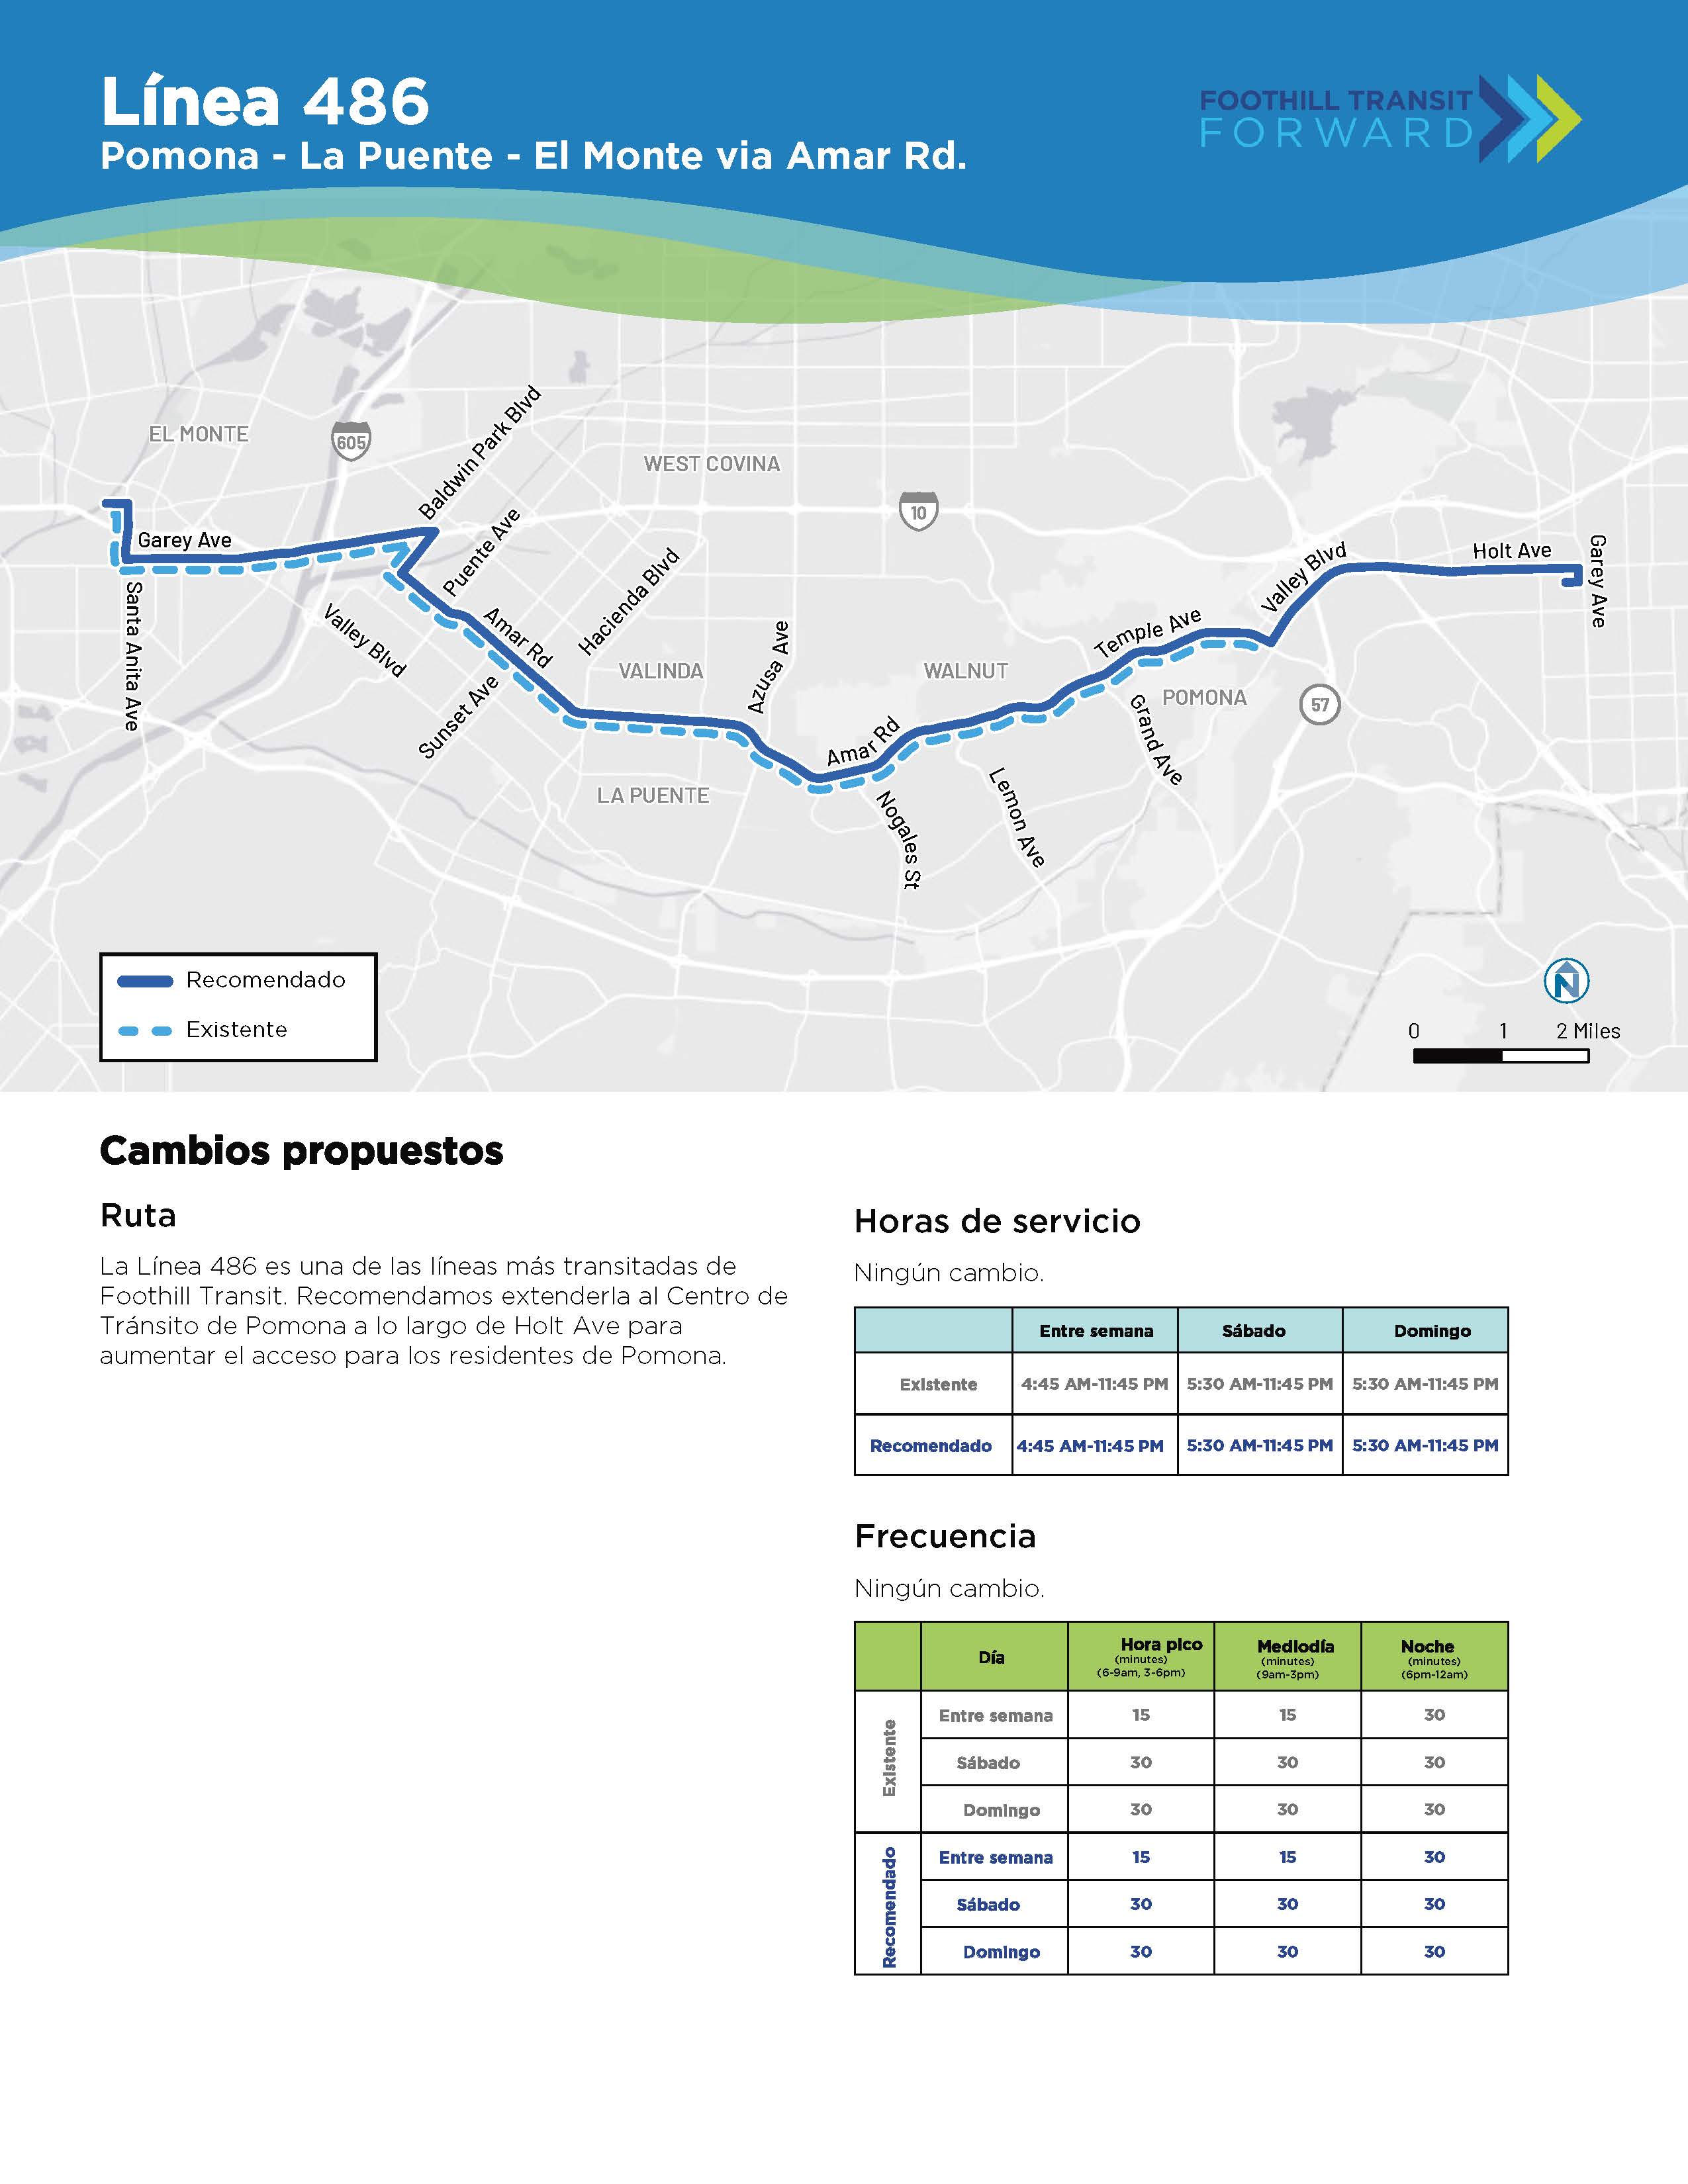 La Línea 486 es una de las más transitadas de Foothill Transit。 Recomendamos extenderla al Centro de Tránsito de Pomona a lo largo de Holt Ave para aumentar el acceso para los residentes de Pomona。